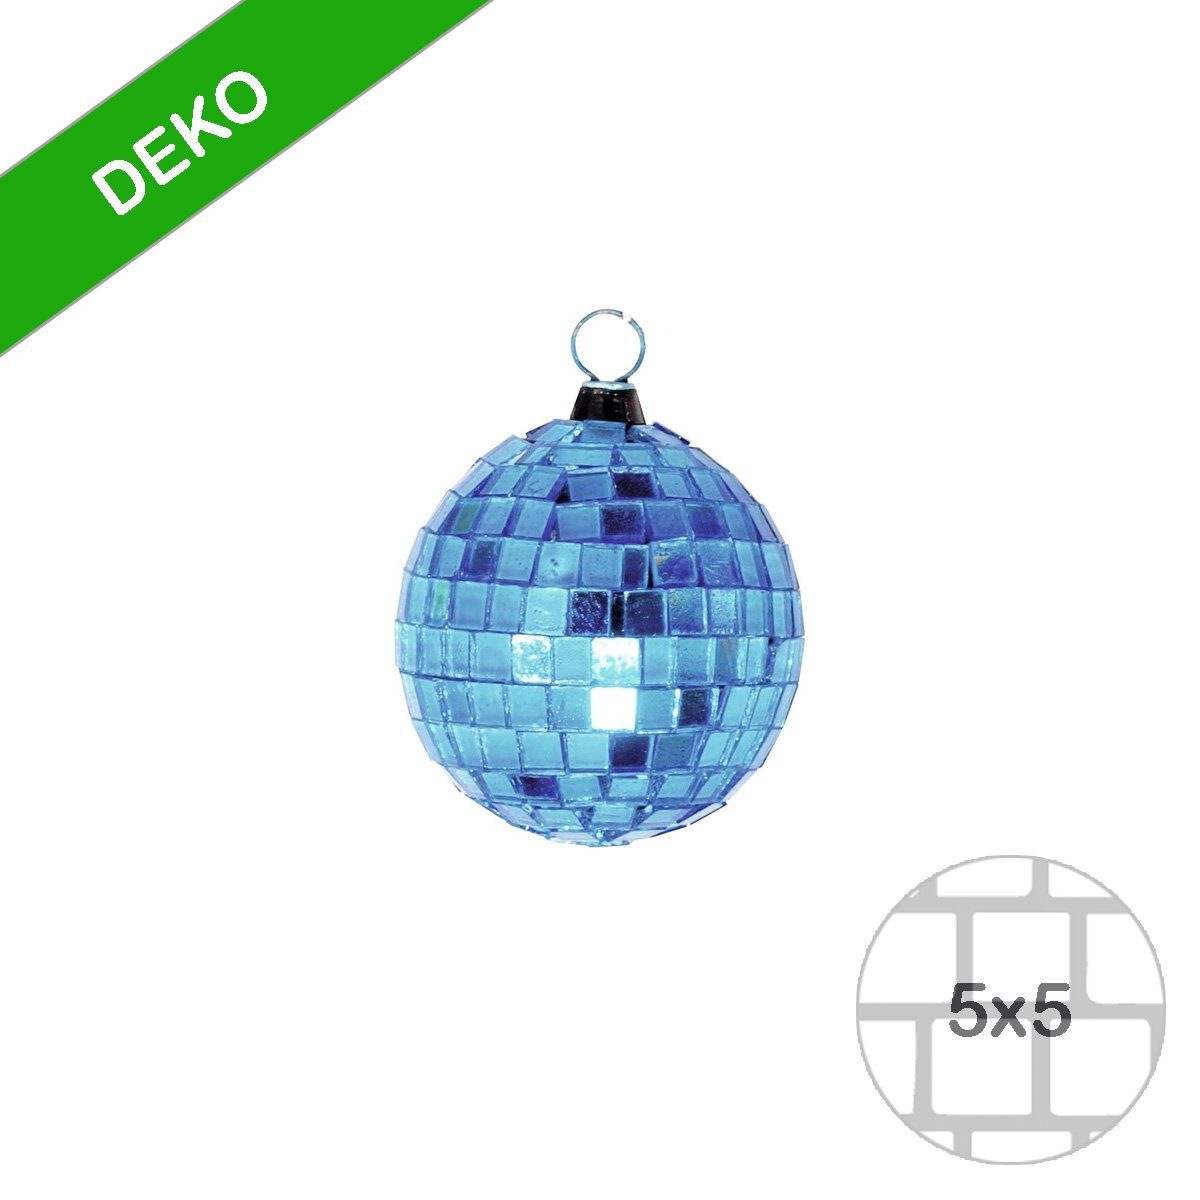 SATISFIRE Discolicht 5cm Disko Party Discokugel Spiegelkugel coole Mini Deko blau